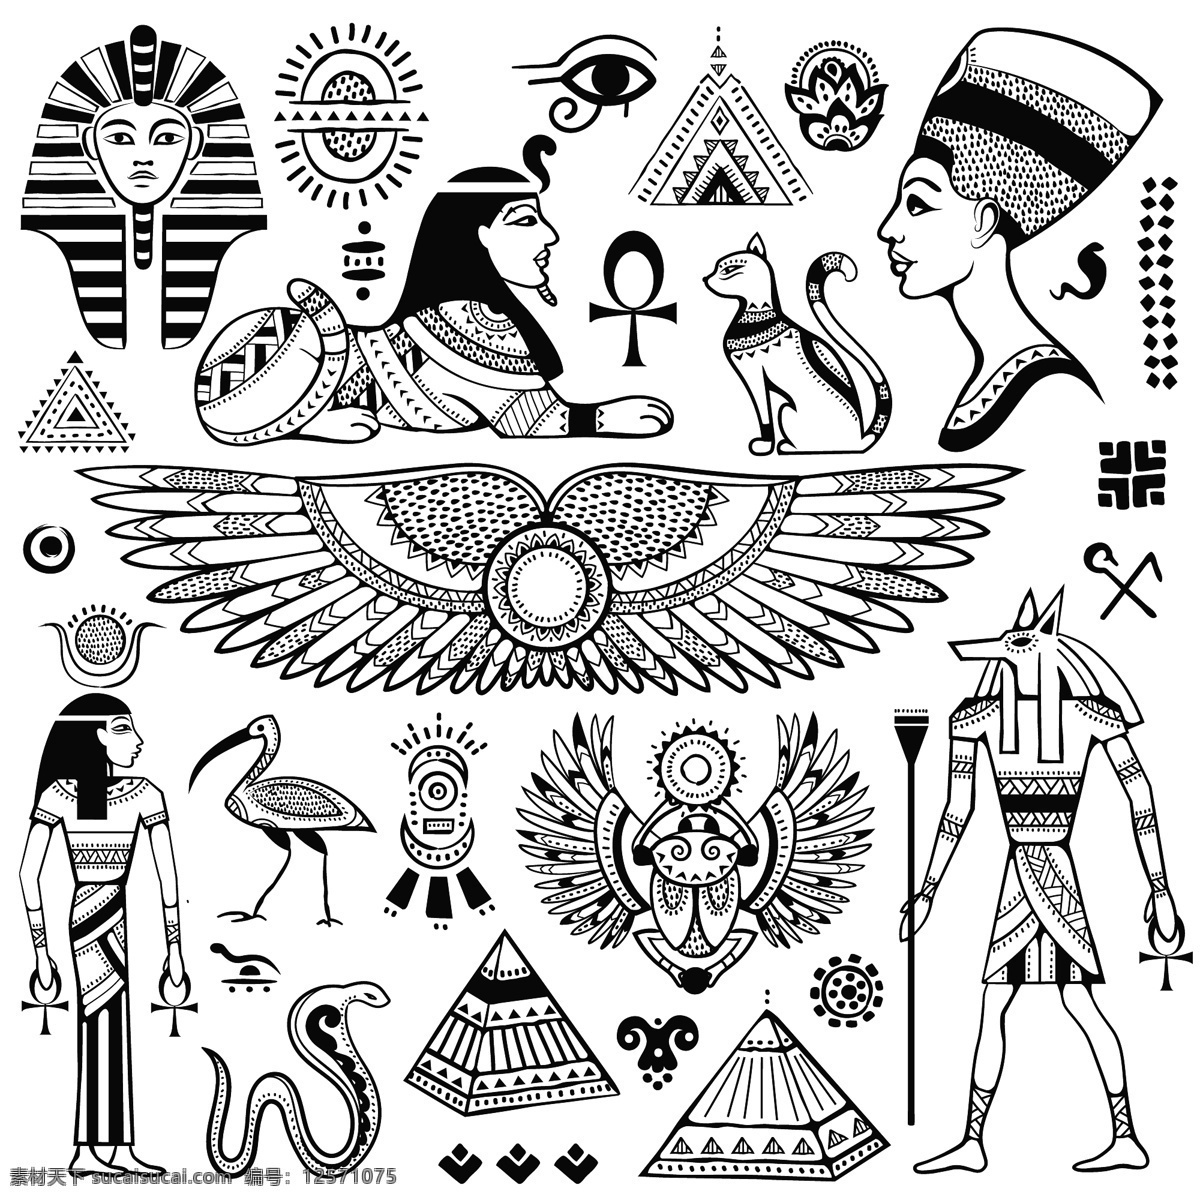 古埃及文化 埃及文化元素 矢量素材 文化特色 扁平化图标 金字塔 狮身人面像 法老 文化艺术 传统文化